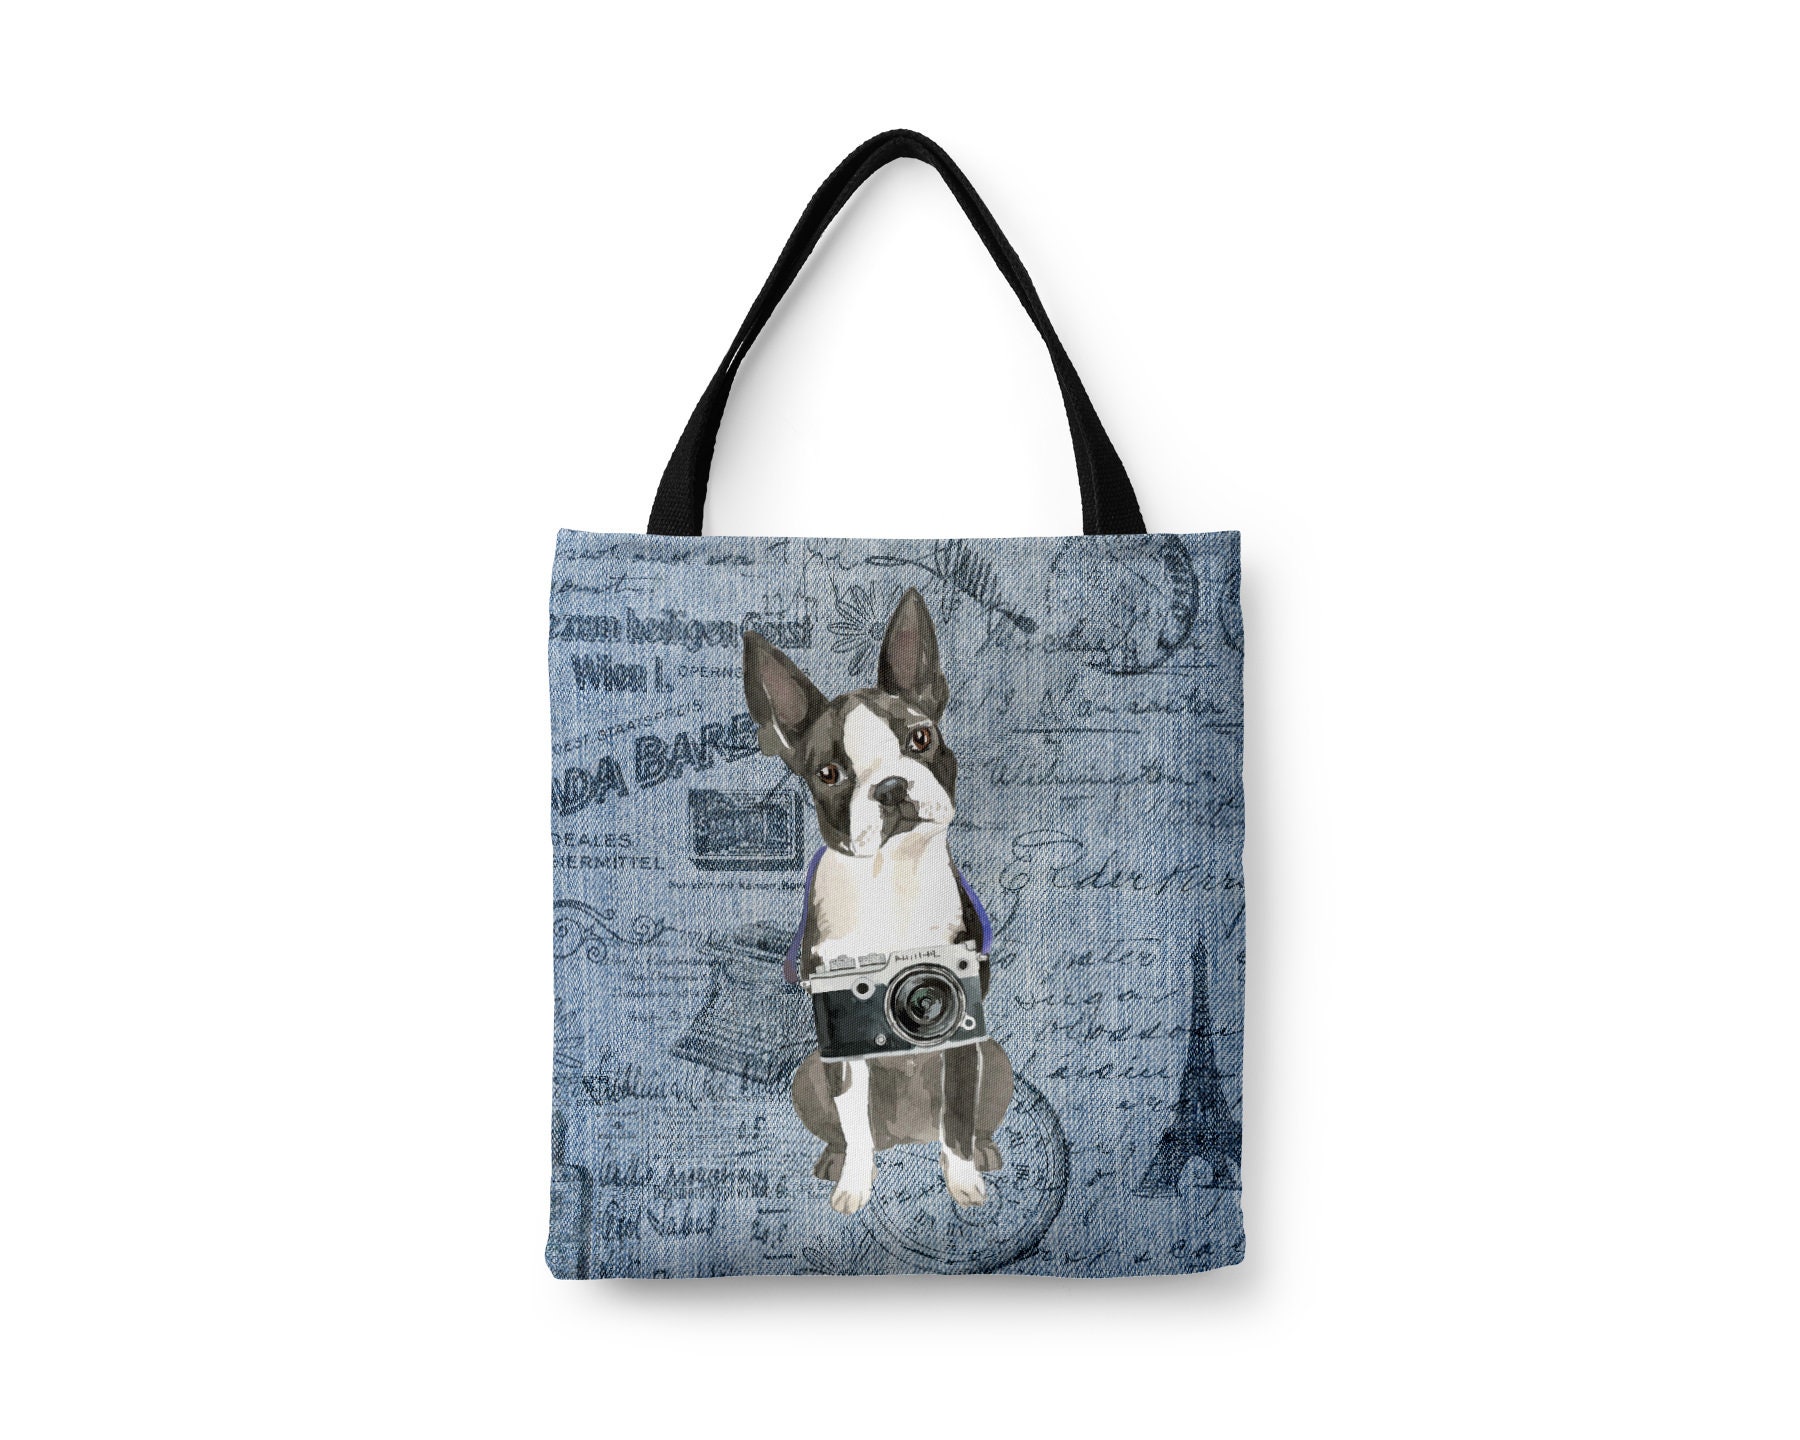 Boston Terrier Dog Tote Bag - Illustrated Dogs & 6 Denim Inspired Styles. All Purpose For Shopping Bull, American Gentlemen